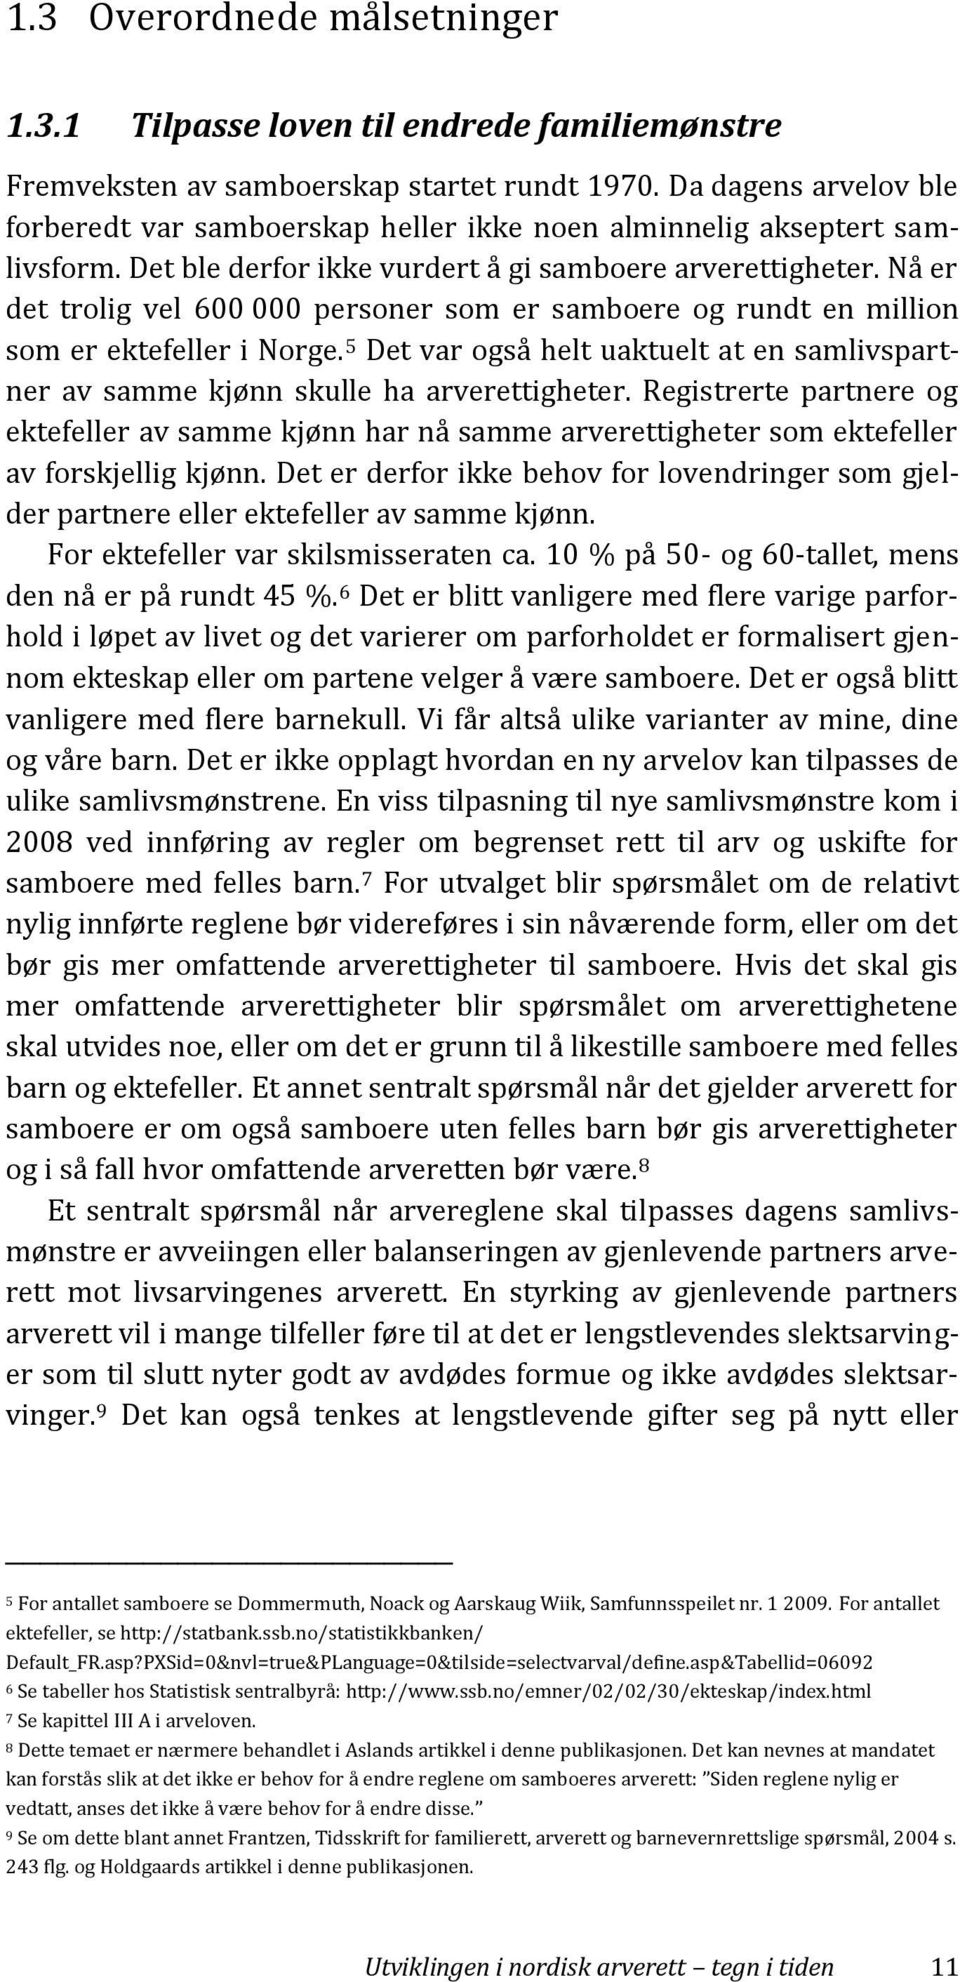 Nå er det trolig vel 600 000 personer som er samboere og rundt en million som er ektefeller i Norge. 5 Det var også helt uaktuelt at en samlivspartner av samme kjønn skulle ha arverettigheter.